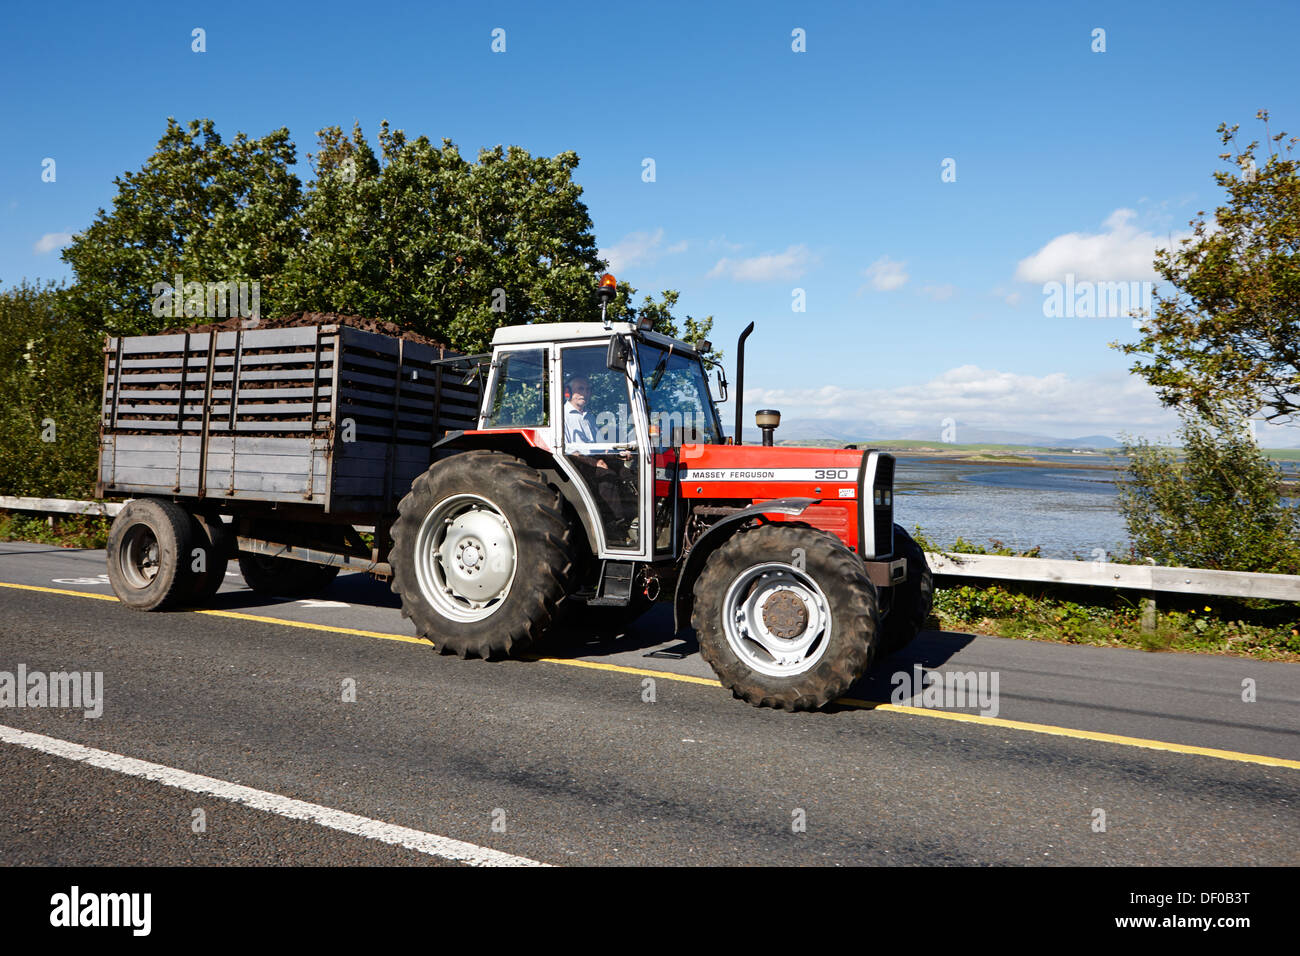 https://c8.alamy.com/compde/df0b3t/traktor-abschleppen-trailer-von-geschnittenen-getrockneten-rasen-fur-winter-kraftstoff-grafschaft-mayo-republik-von-irland-df0b3t.jpg